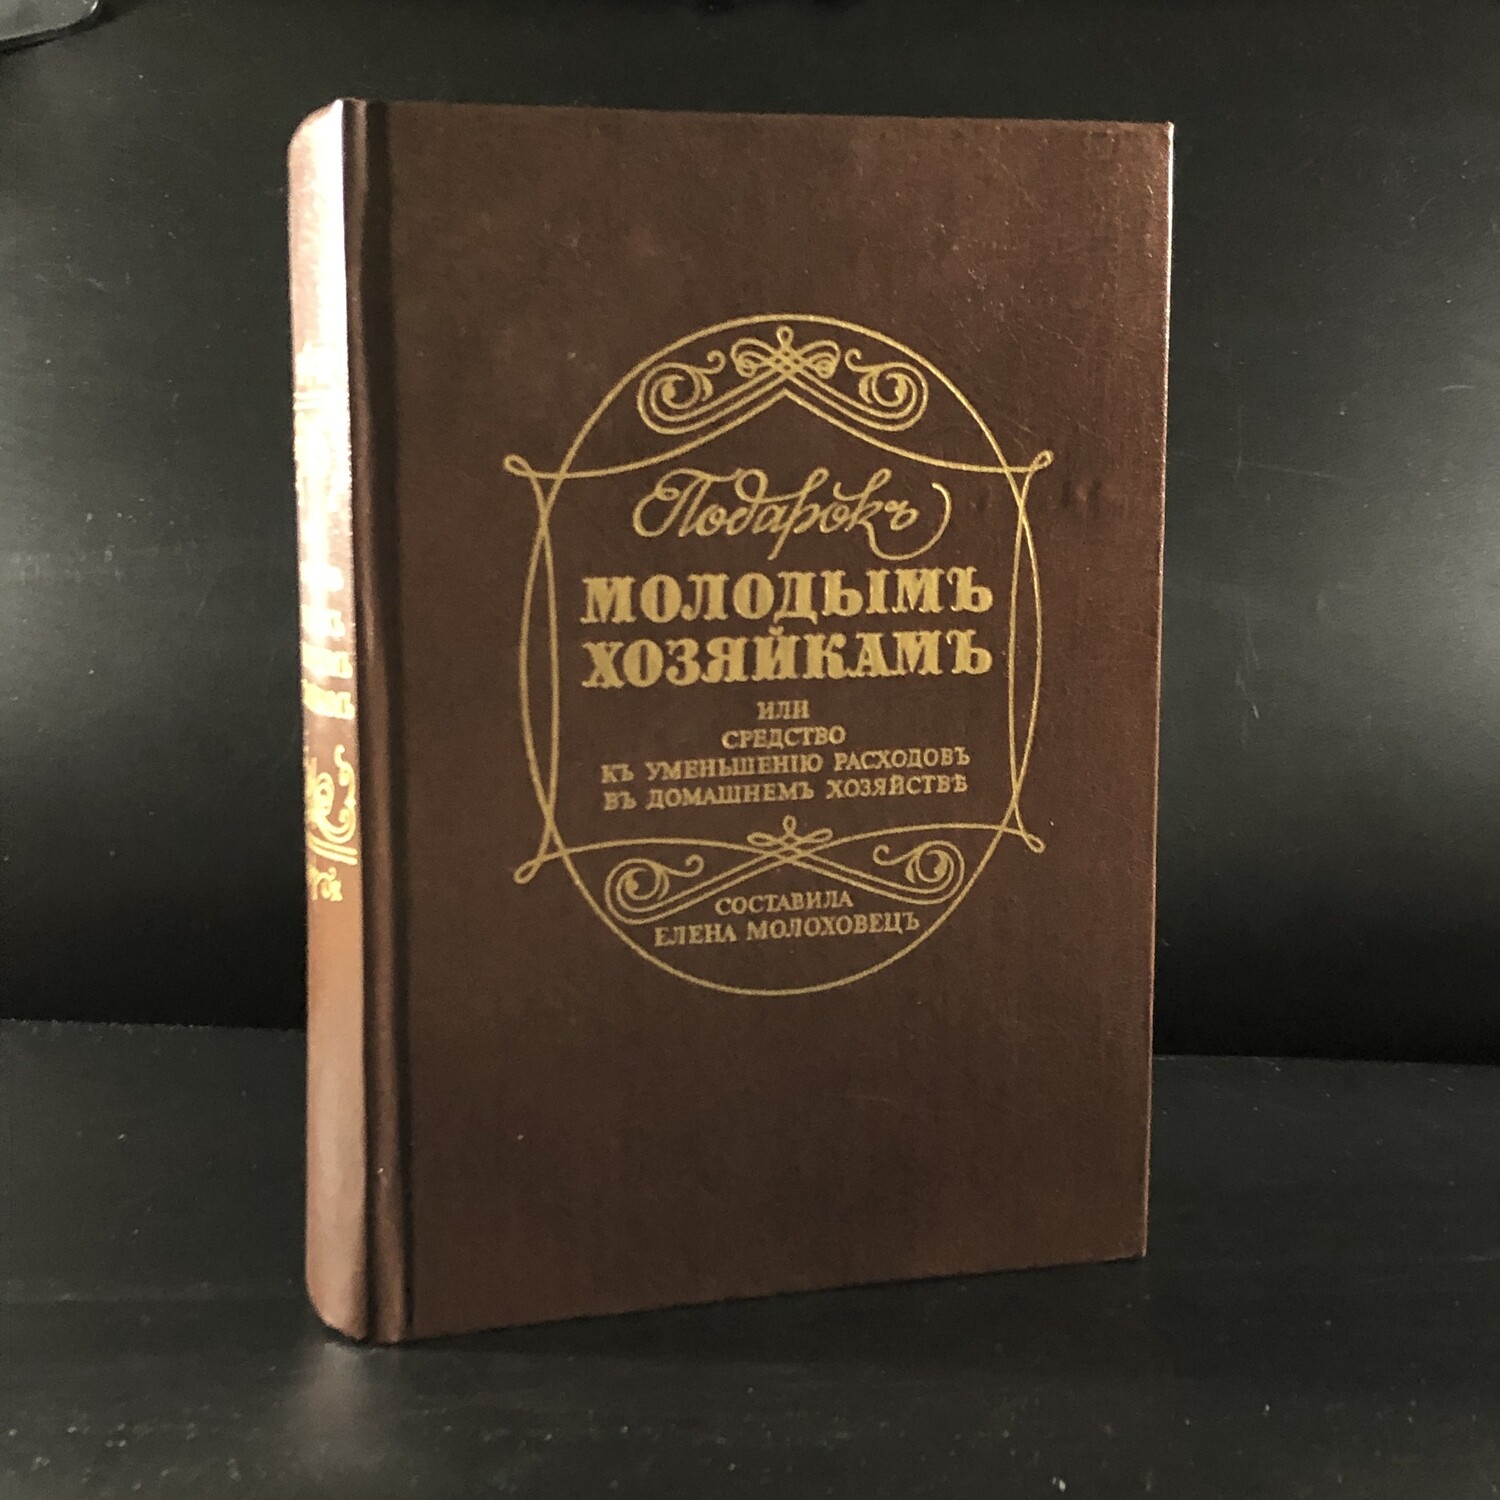 В книге елены молоховец подарок молодым хозяйкам. Молоховец подарок молодым хозяйкам репринт. "Подарок молодым хозяйкам" 1861 "первое издание".